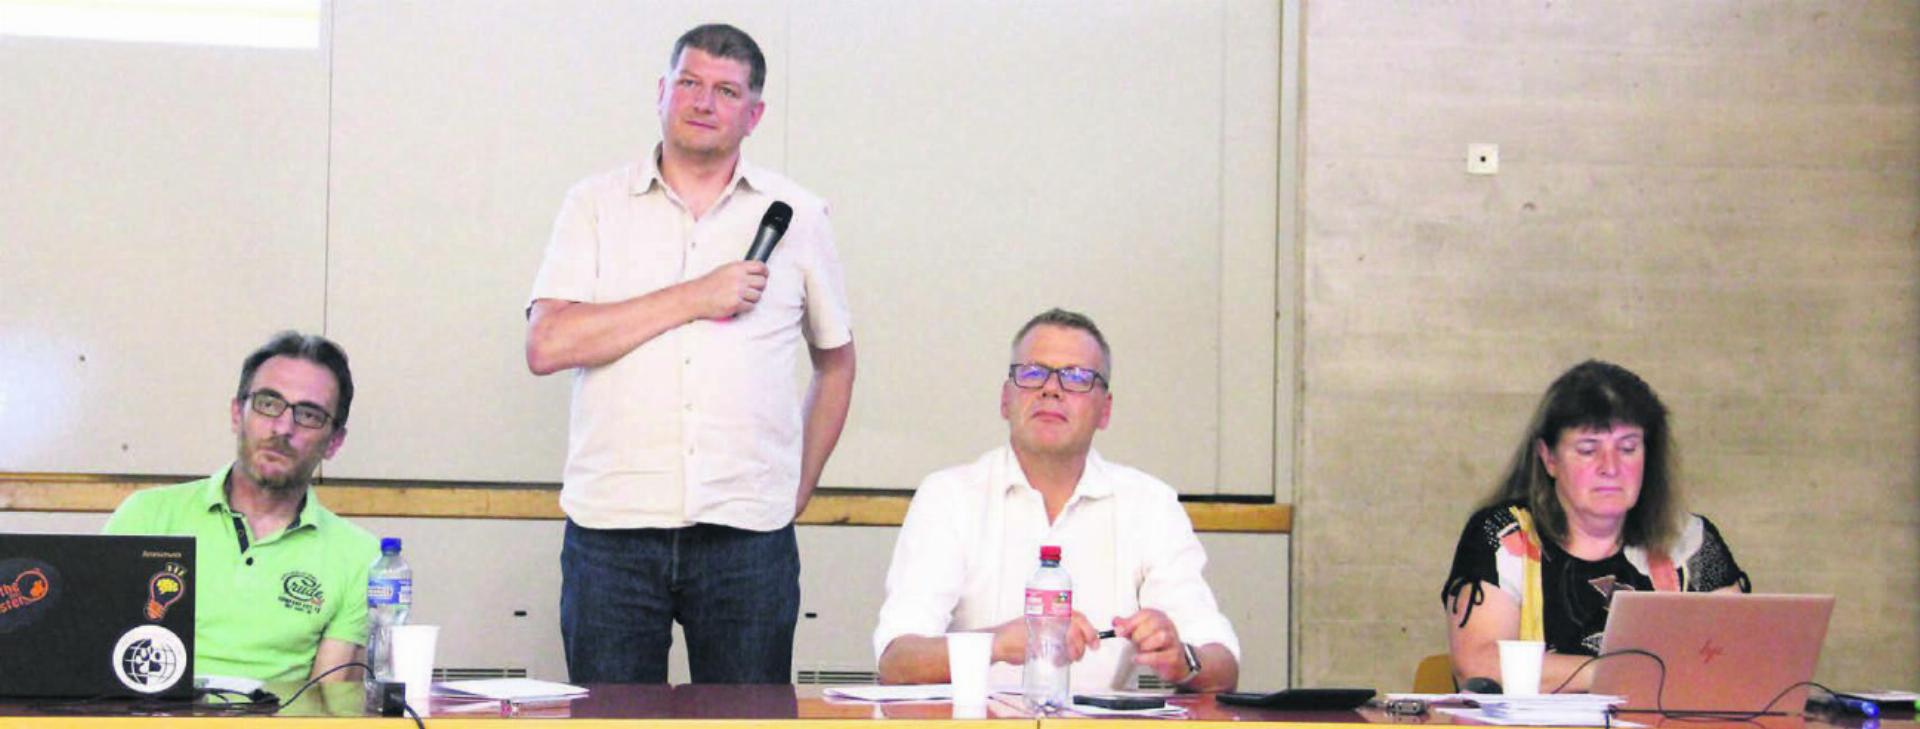 Die Gemeinderäte Alex Lötscher, Mario Räber (Ammann) und Peter Ammann (von links) blieben bei allen Diskussionen souverän und sachlich. Bild: Monica Rast